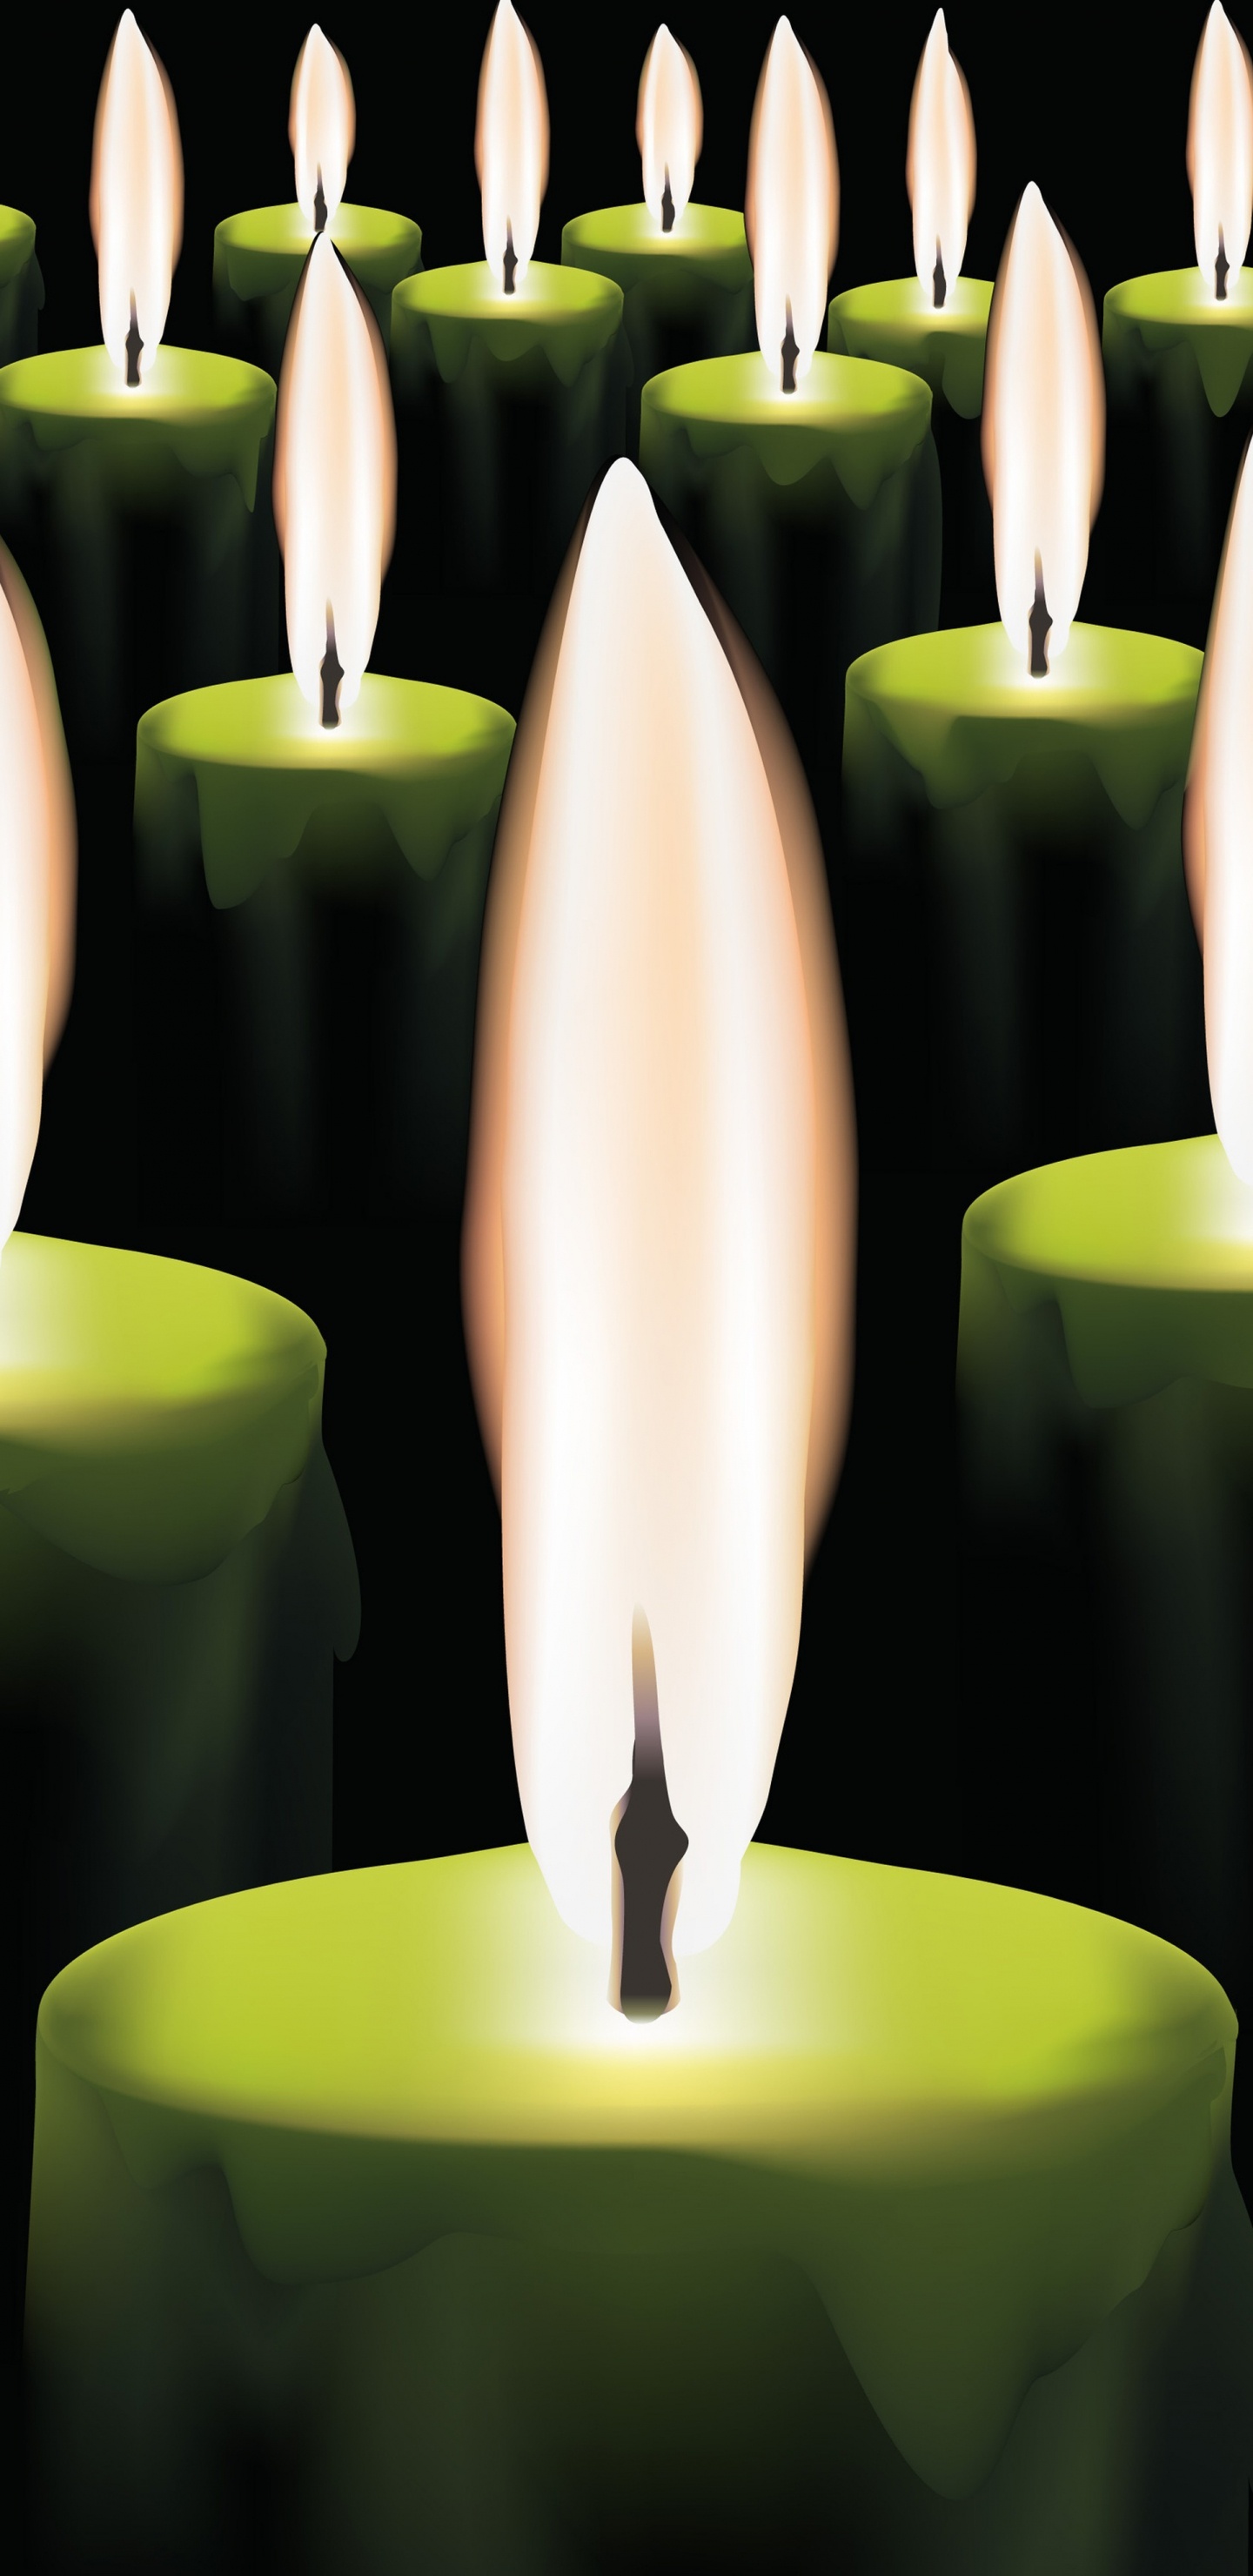 Les Bougies Allumées, Bougie, Flamme, Lumière, Éclairage. Wallpaper in 1440x2960 Resolution